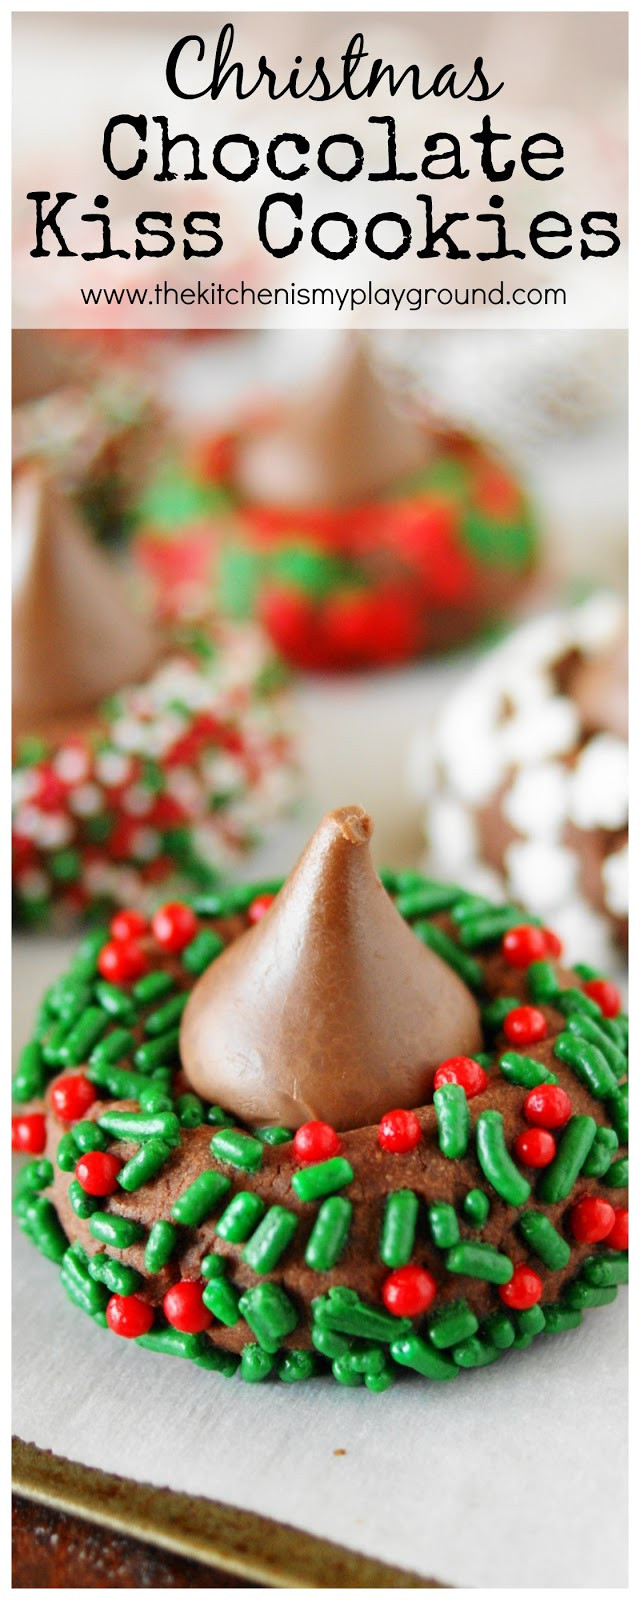 Christmas Kiss Cookies
 Christmas Chocolate Kiss Cookies